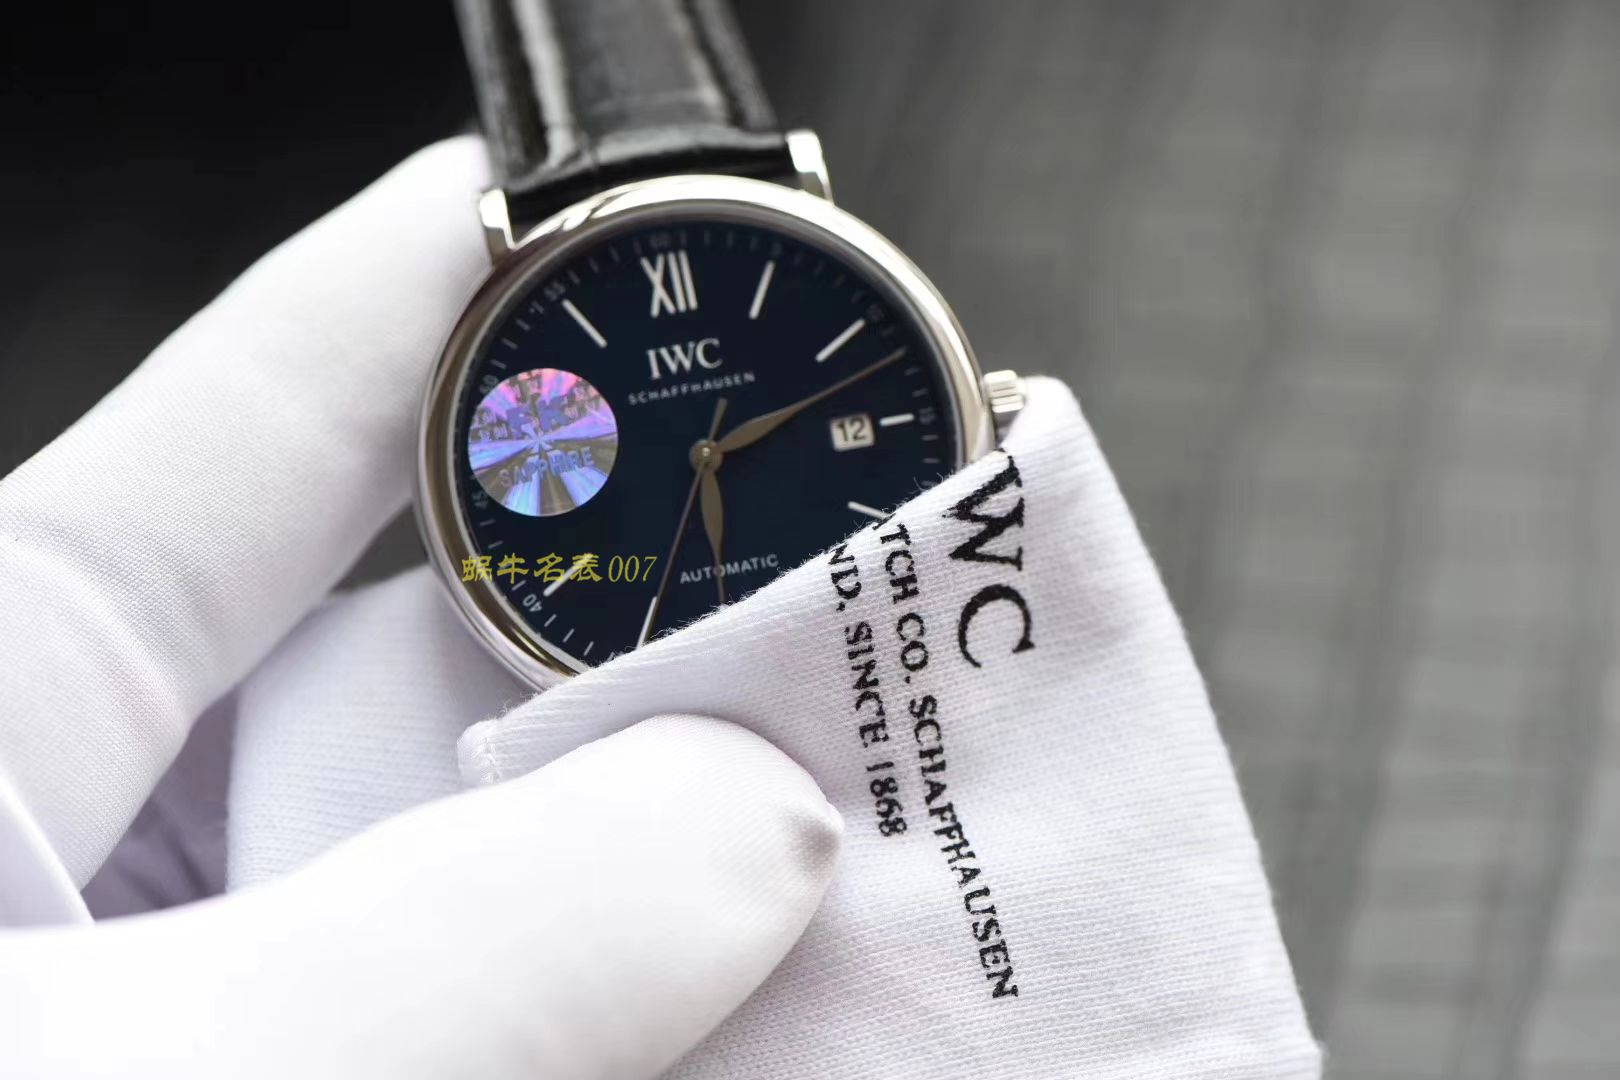 【顶级复刻版手表价格】视频评测IWC万国表柏涛菲诺系列IW356506腕表 